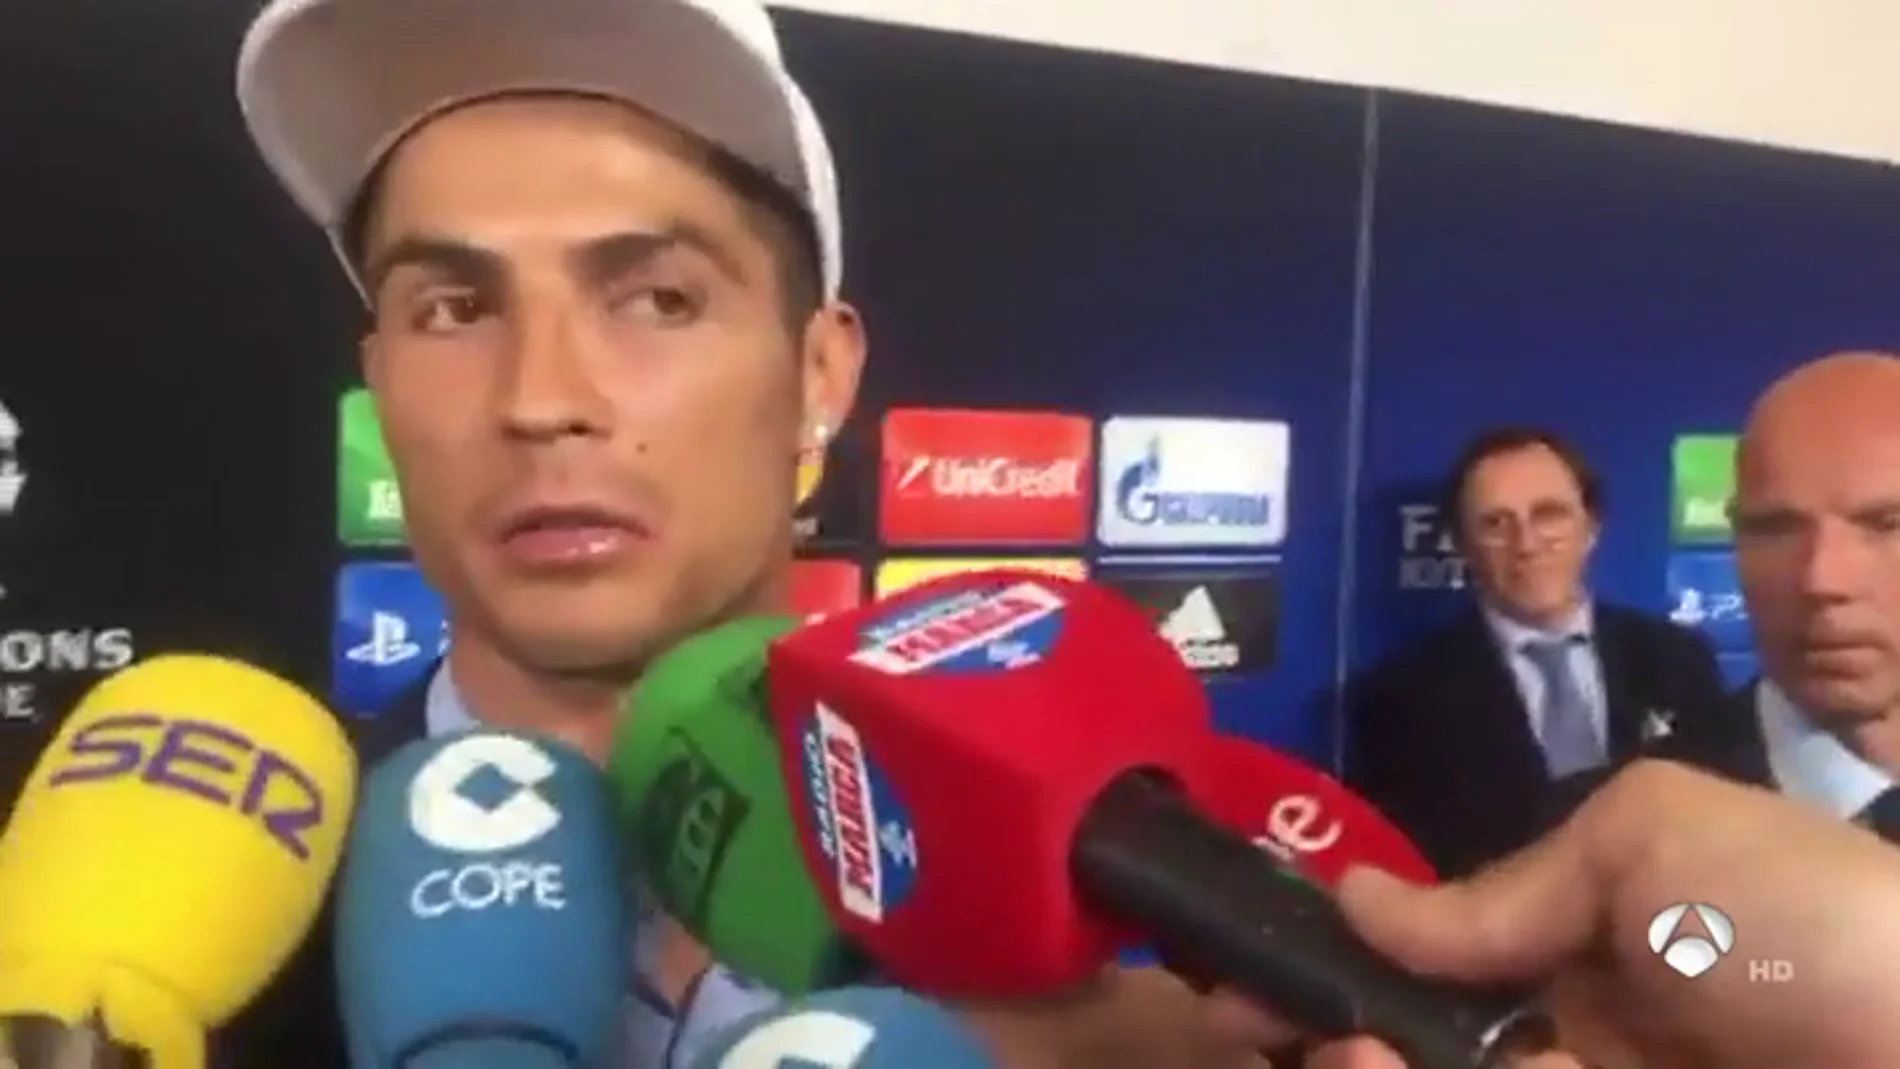 El palo de Cristiano a Florentino Pérez: " No tengo nada que hablar con él, saludo como un buen profesional que soy"